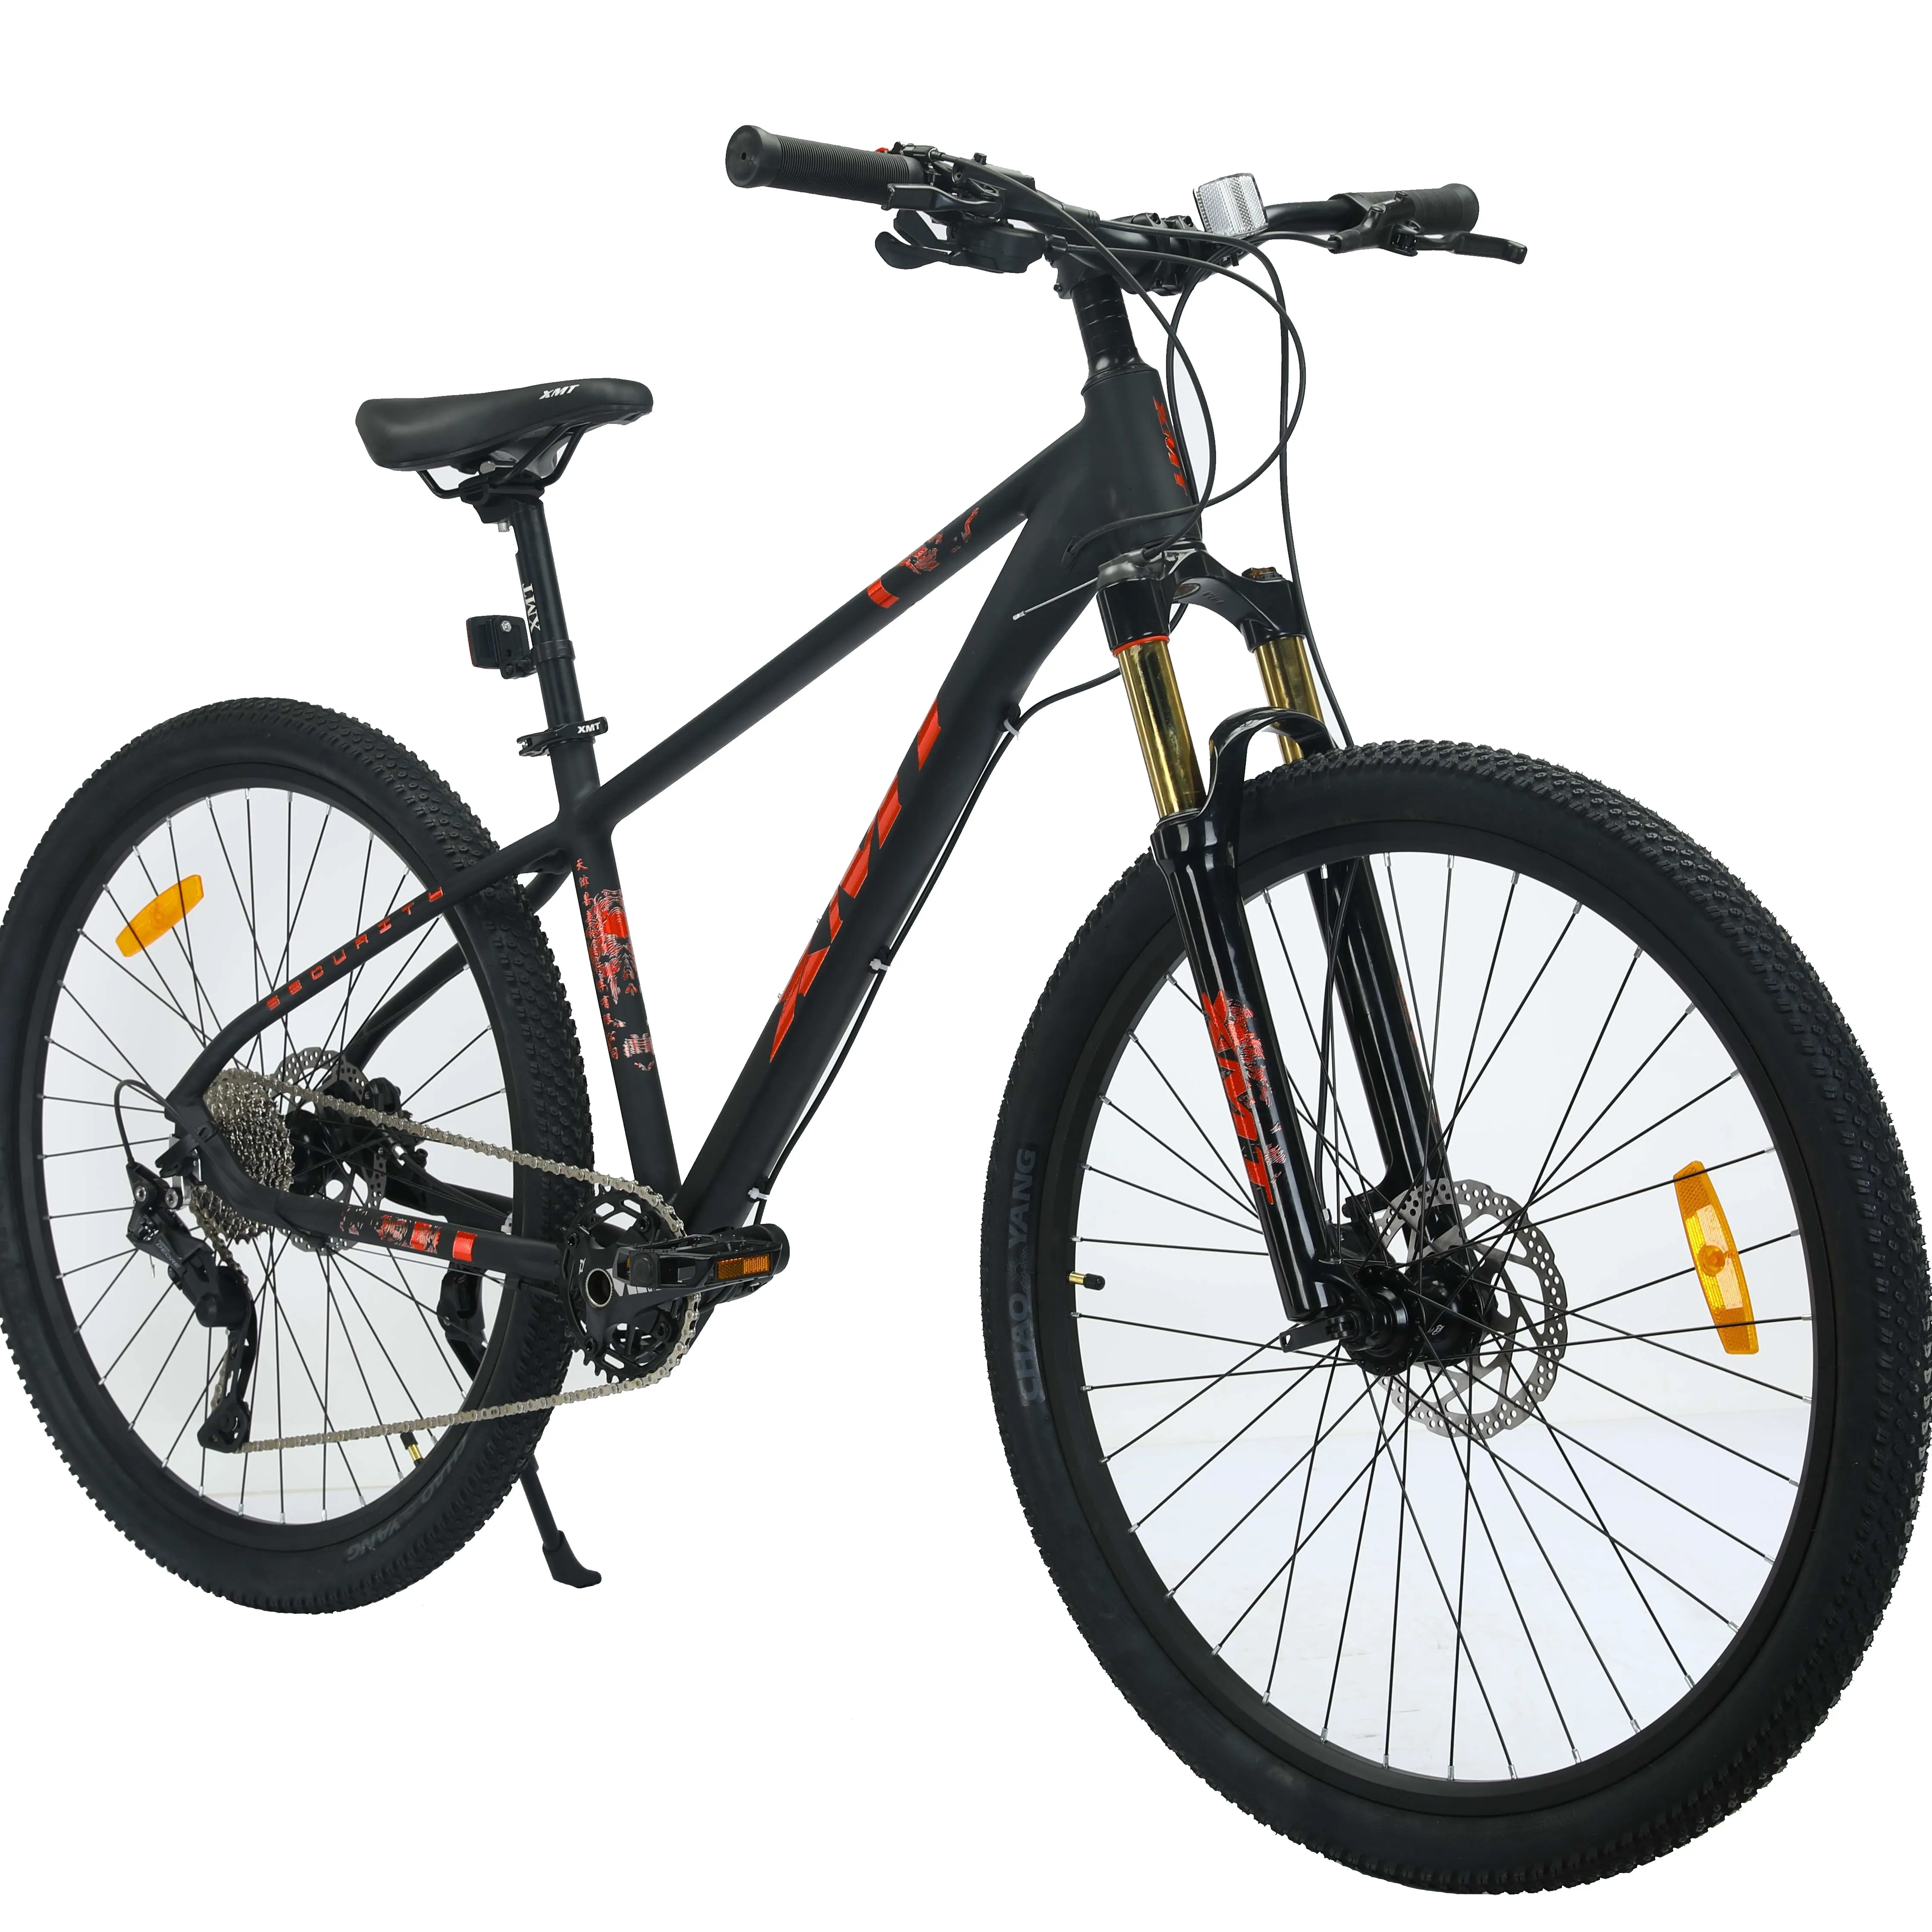 XMT advanced mountain bike 10 velocità tutto telaio in alluminio biciclette da 27.5 pollici per adulti mountain bike